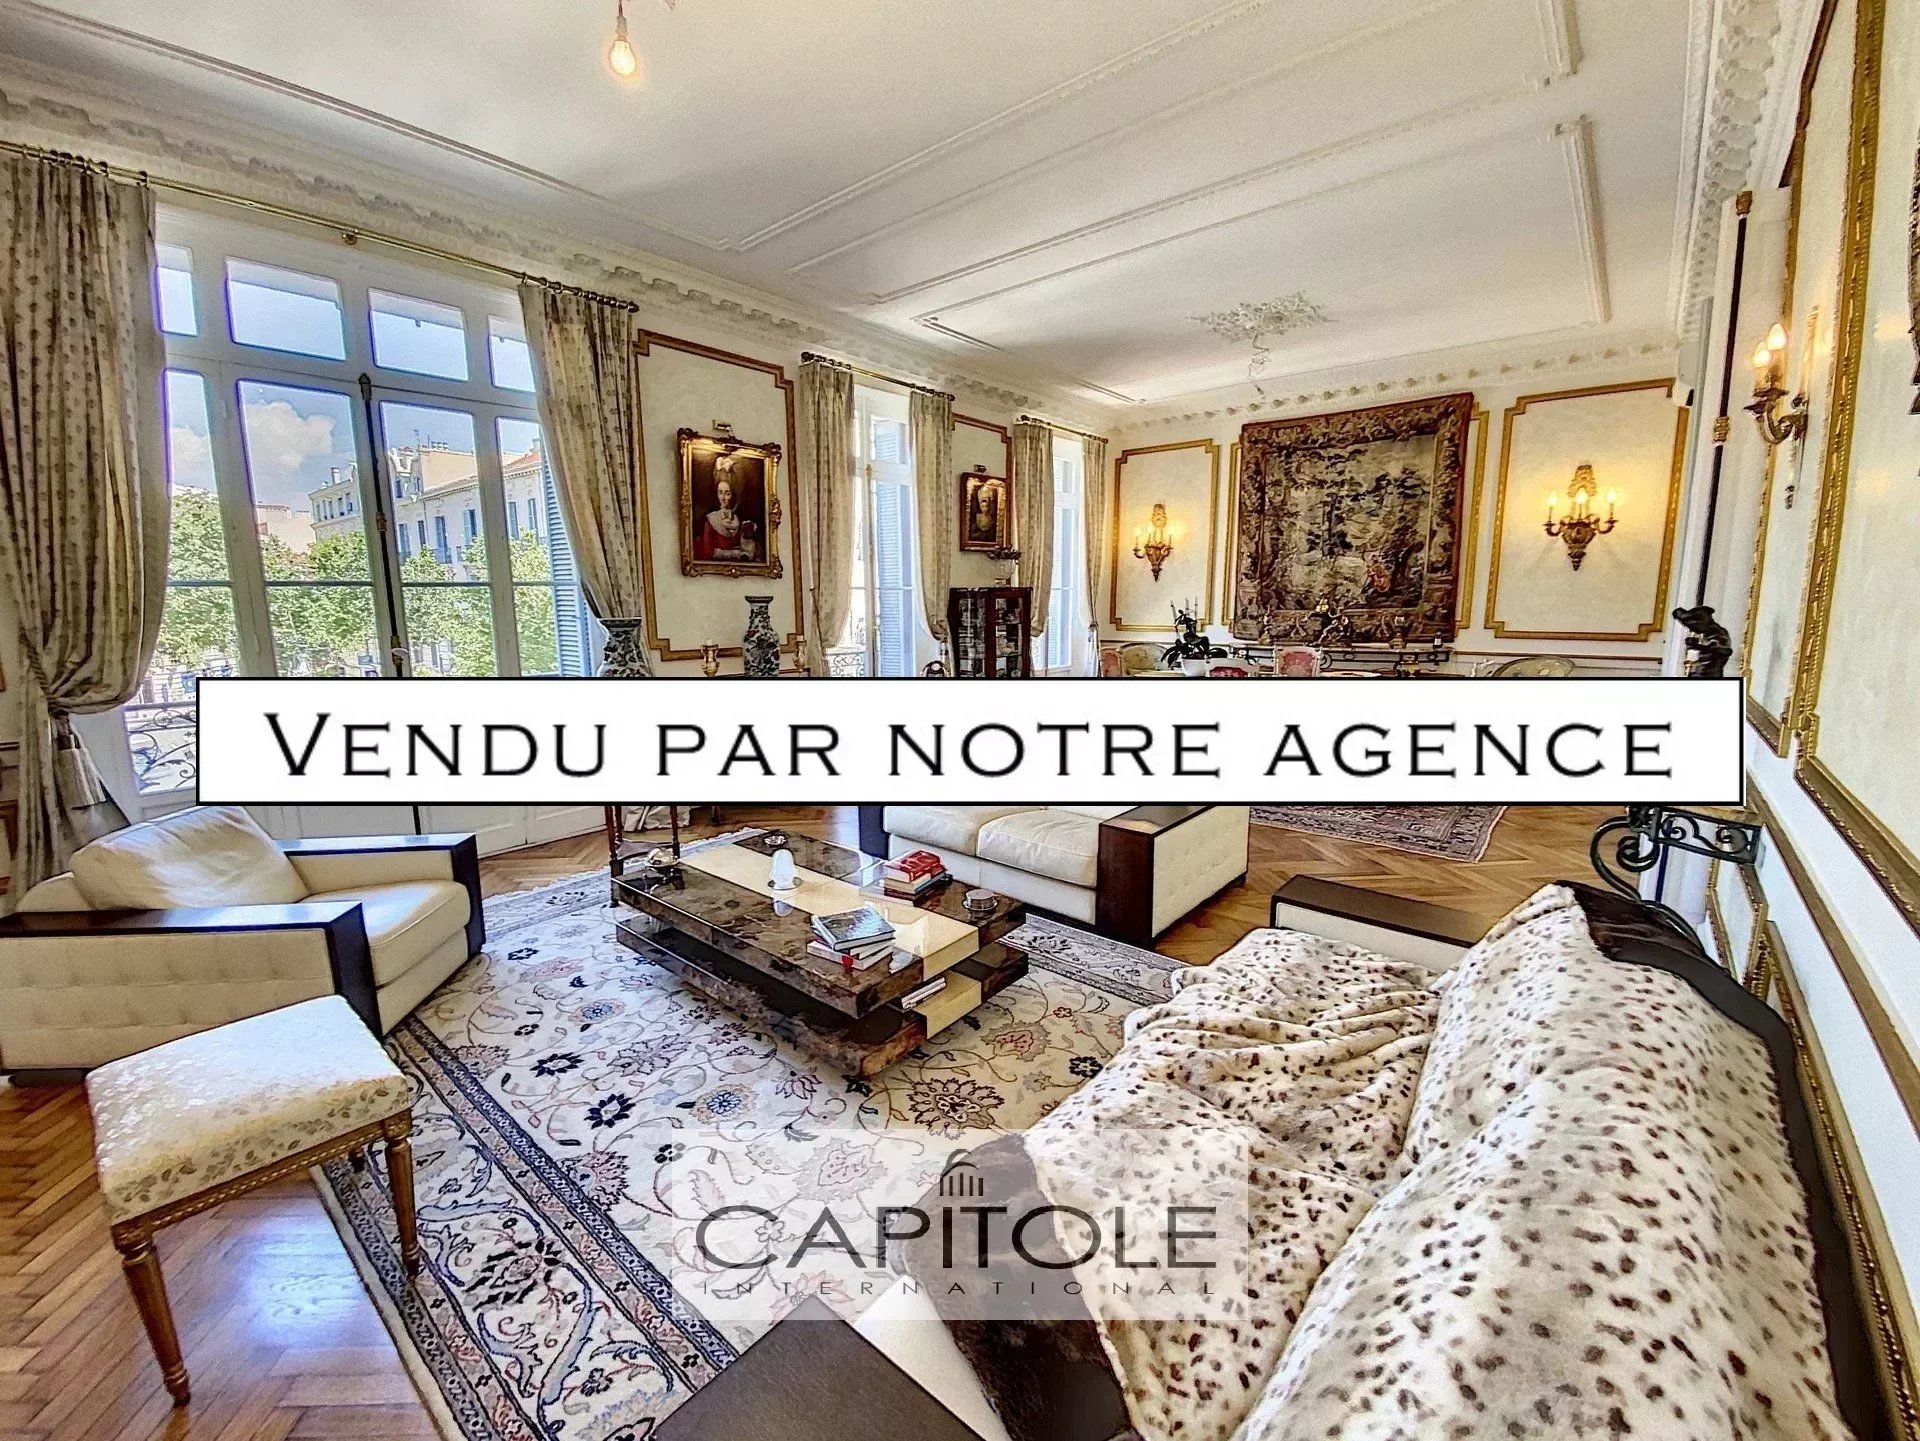 A vendre, Antibes place de Gaulle, exceptionnel appartement bourgeois 4 pièces 150 m², terrasse